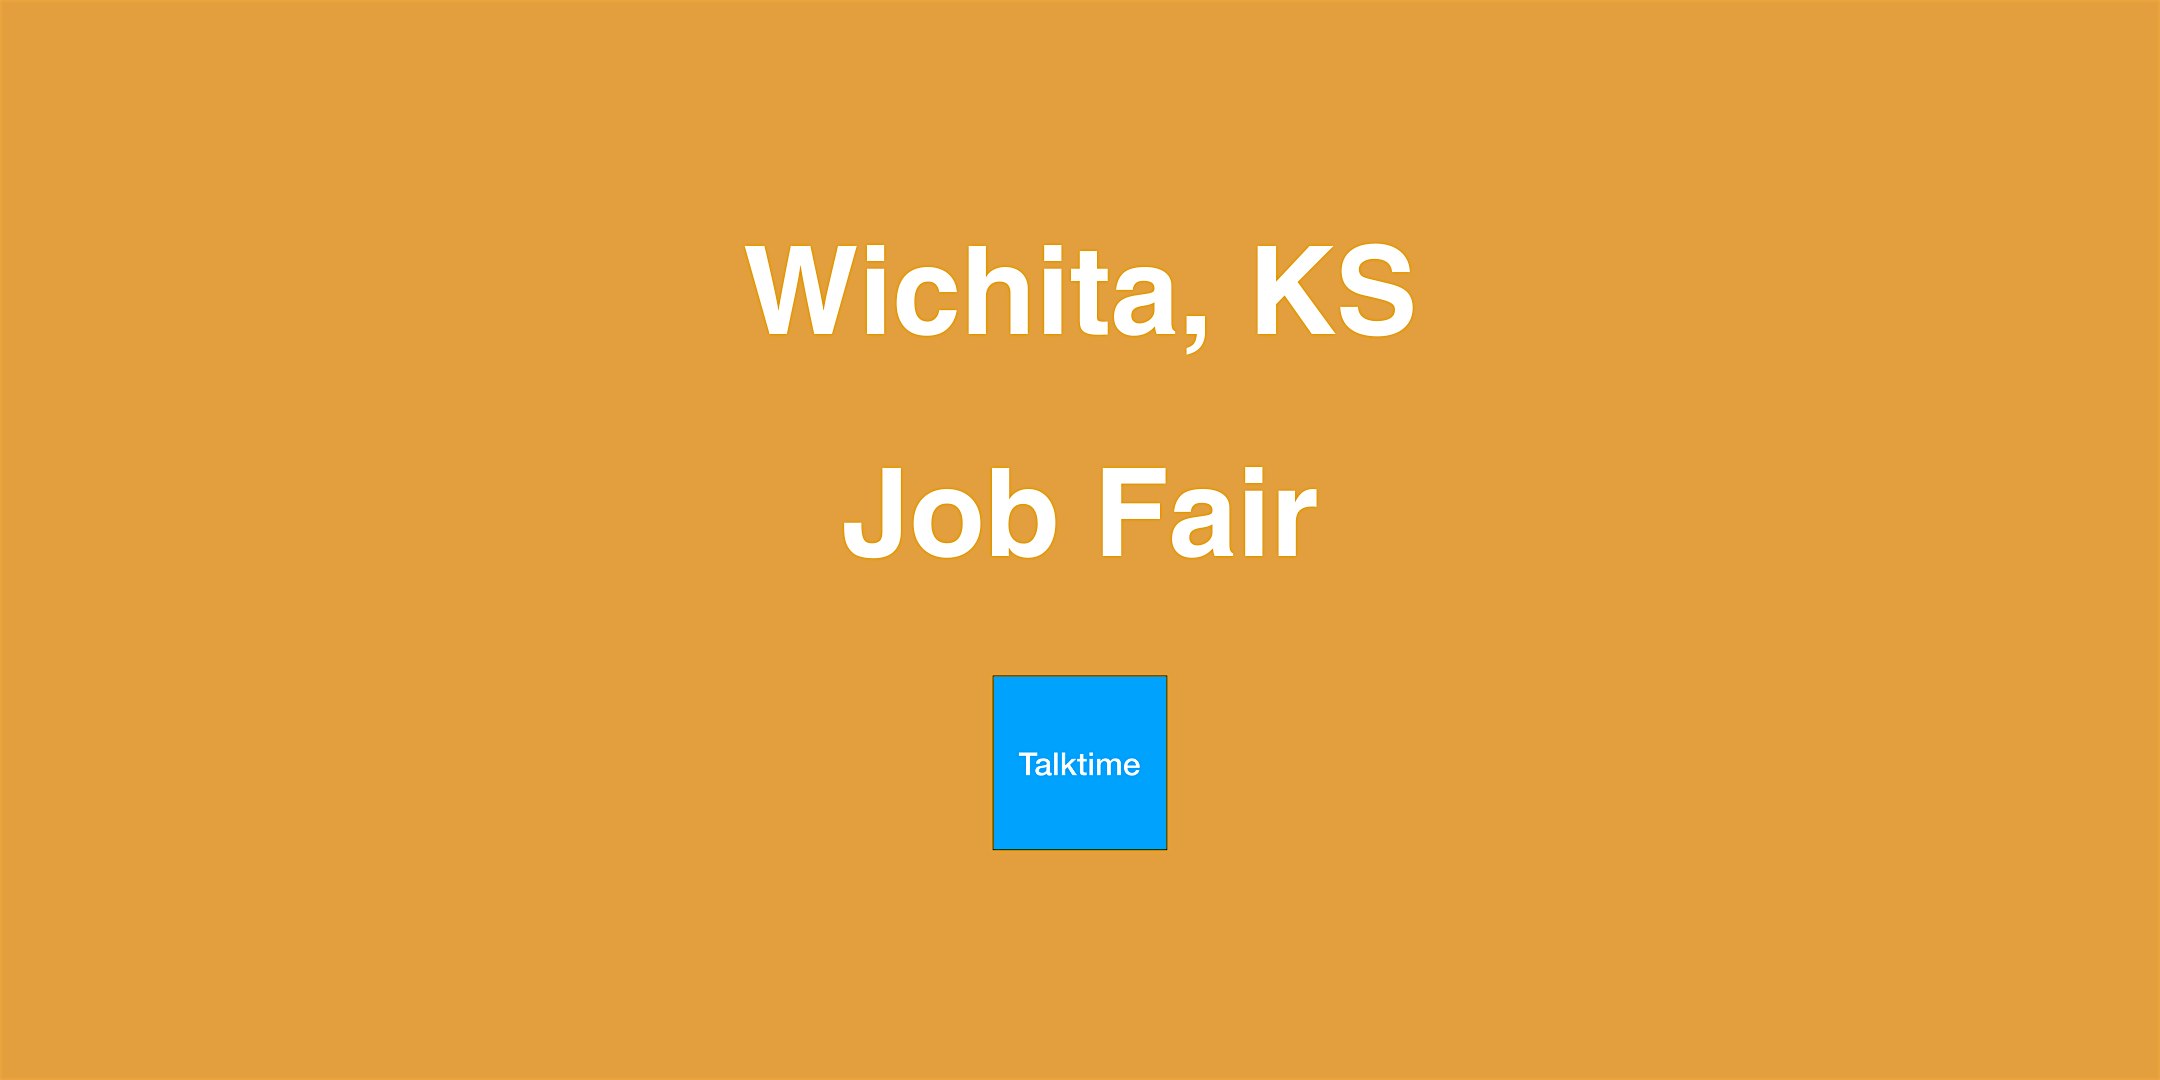 Job Fair - Wichita